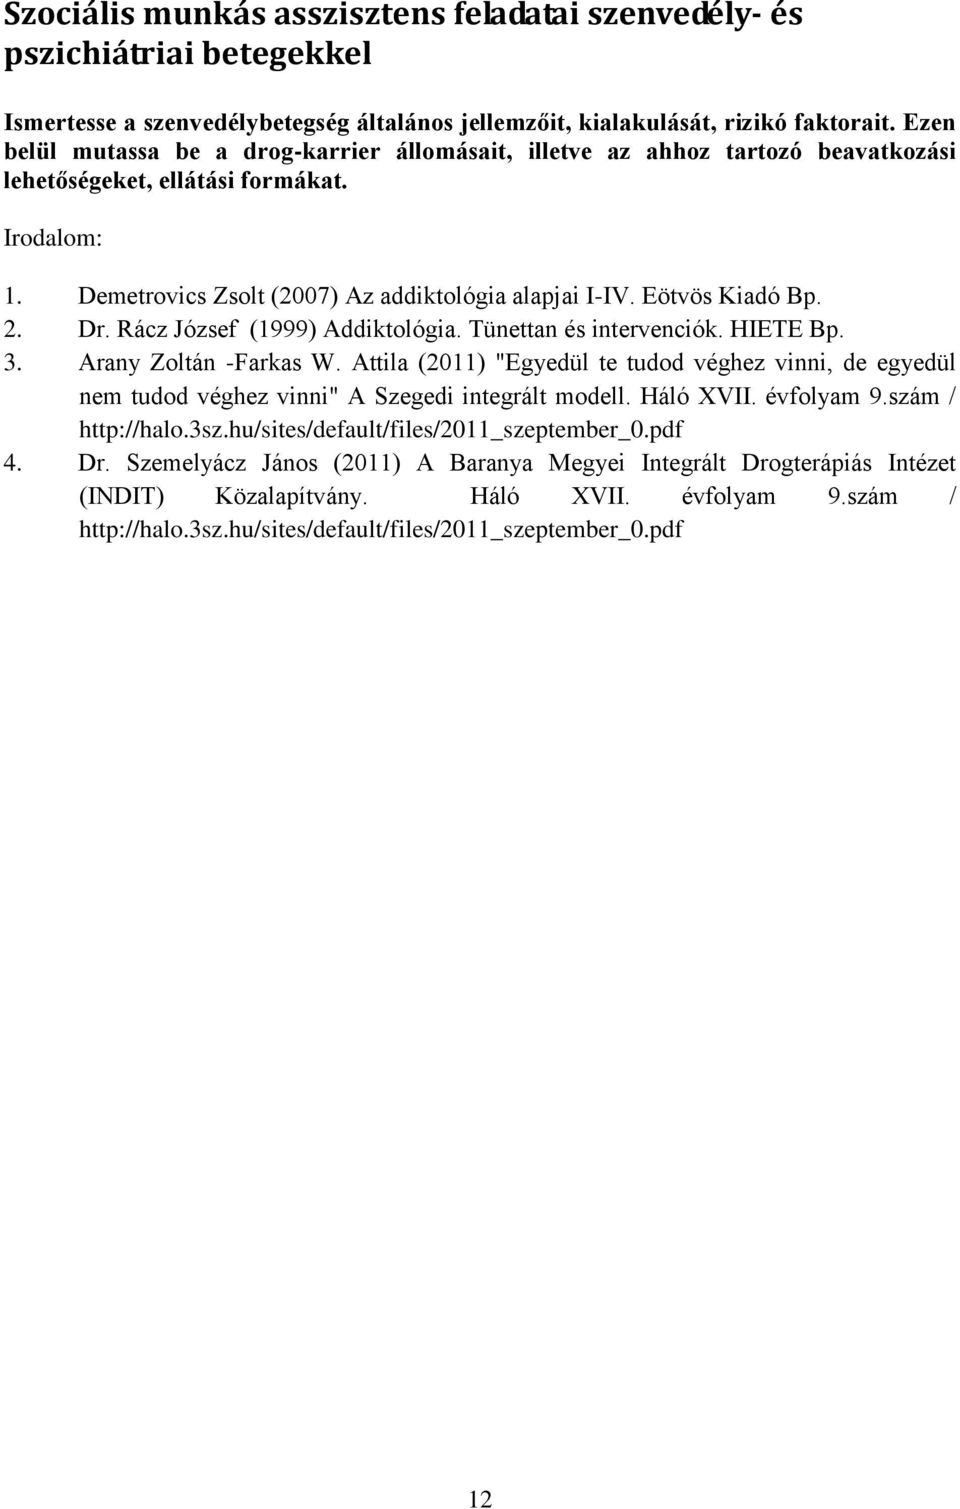 Dr. Rácz József (1999) Addiktológia. Tünettan és intervenciók. HIETE Bp. 3. Arany Zoltán -Farkas W.